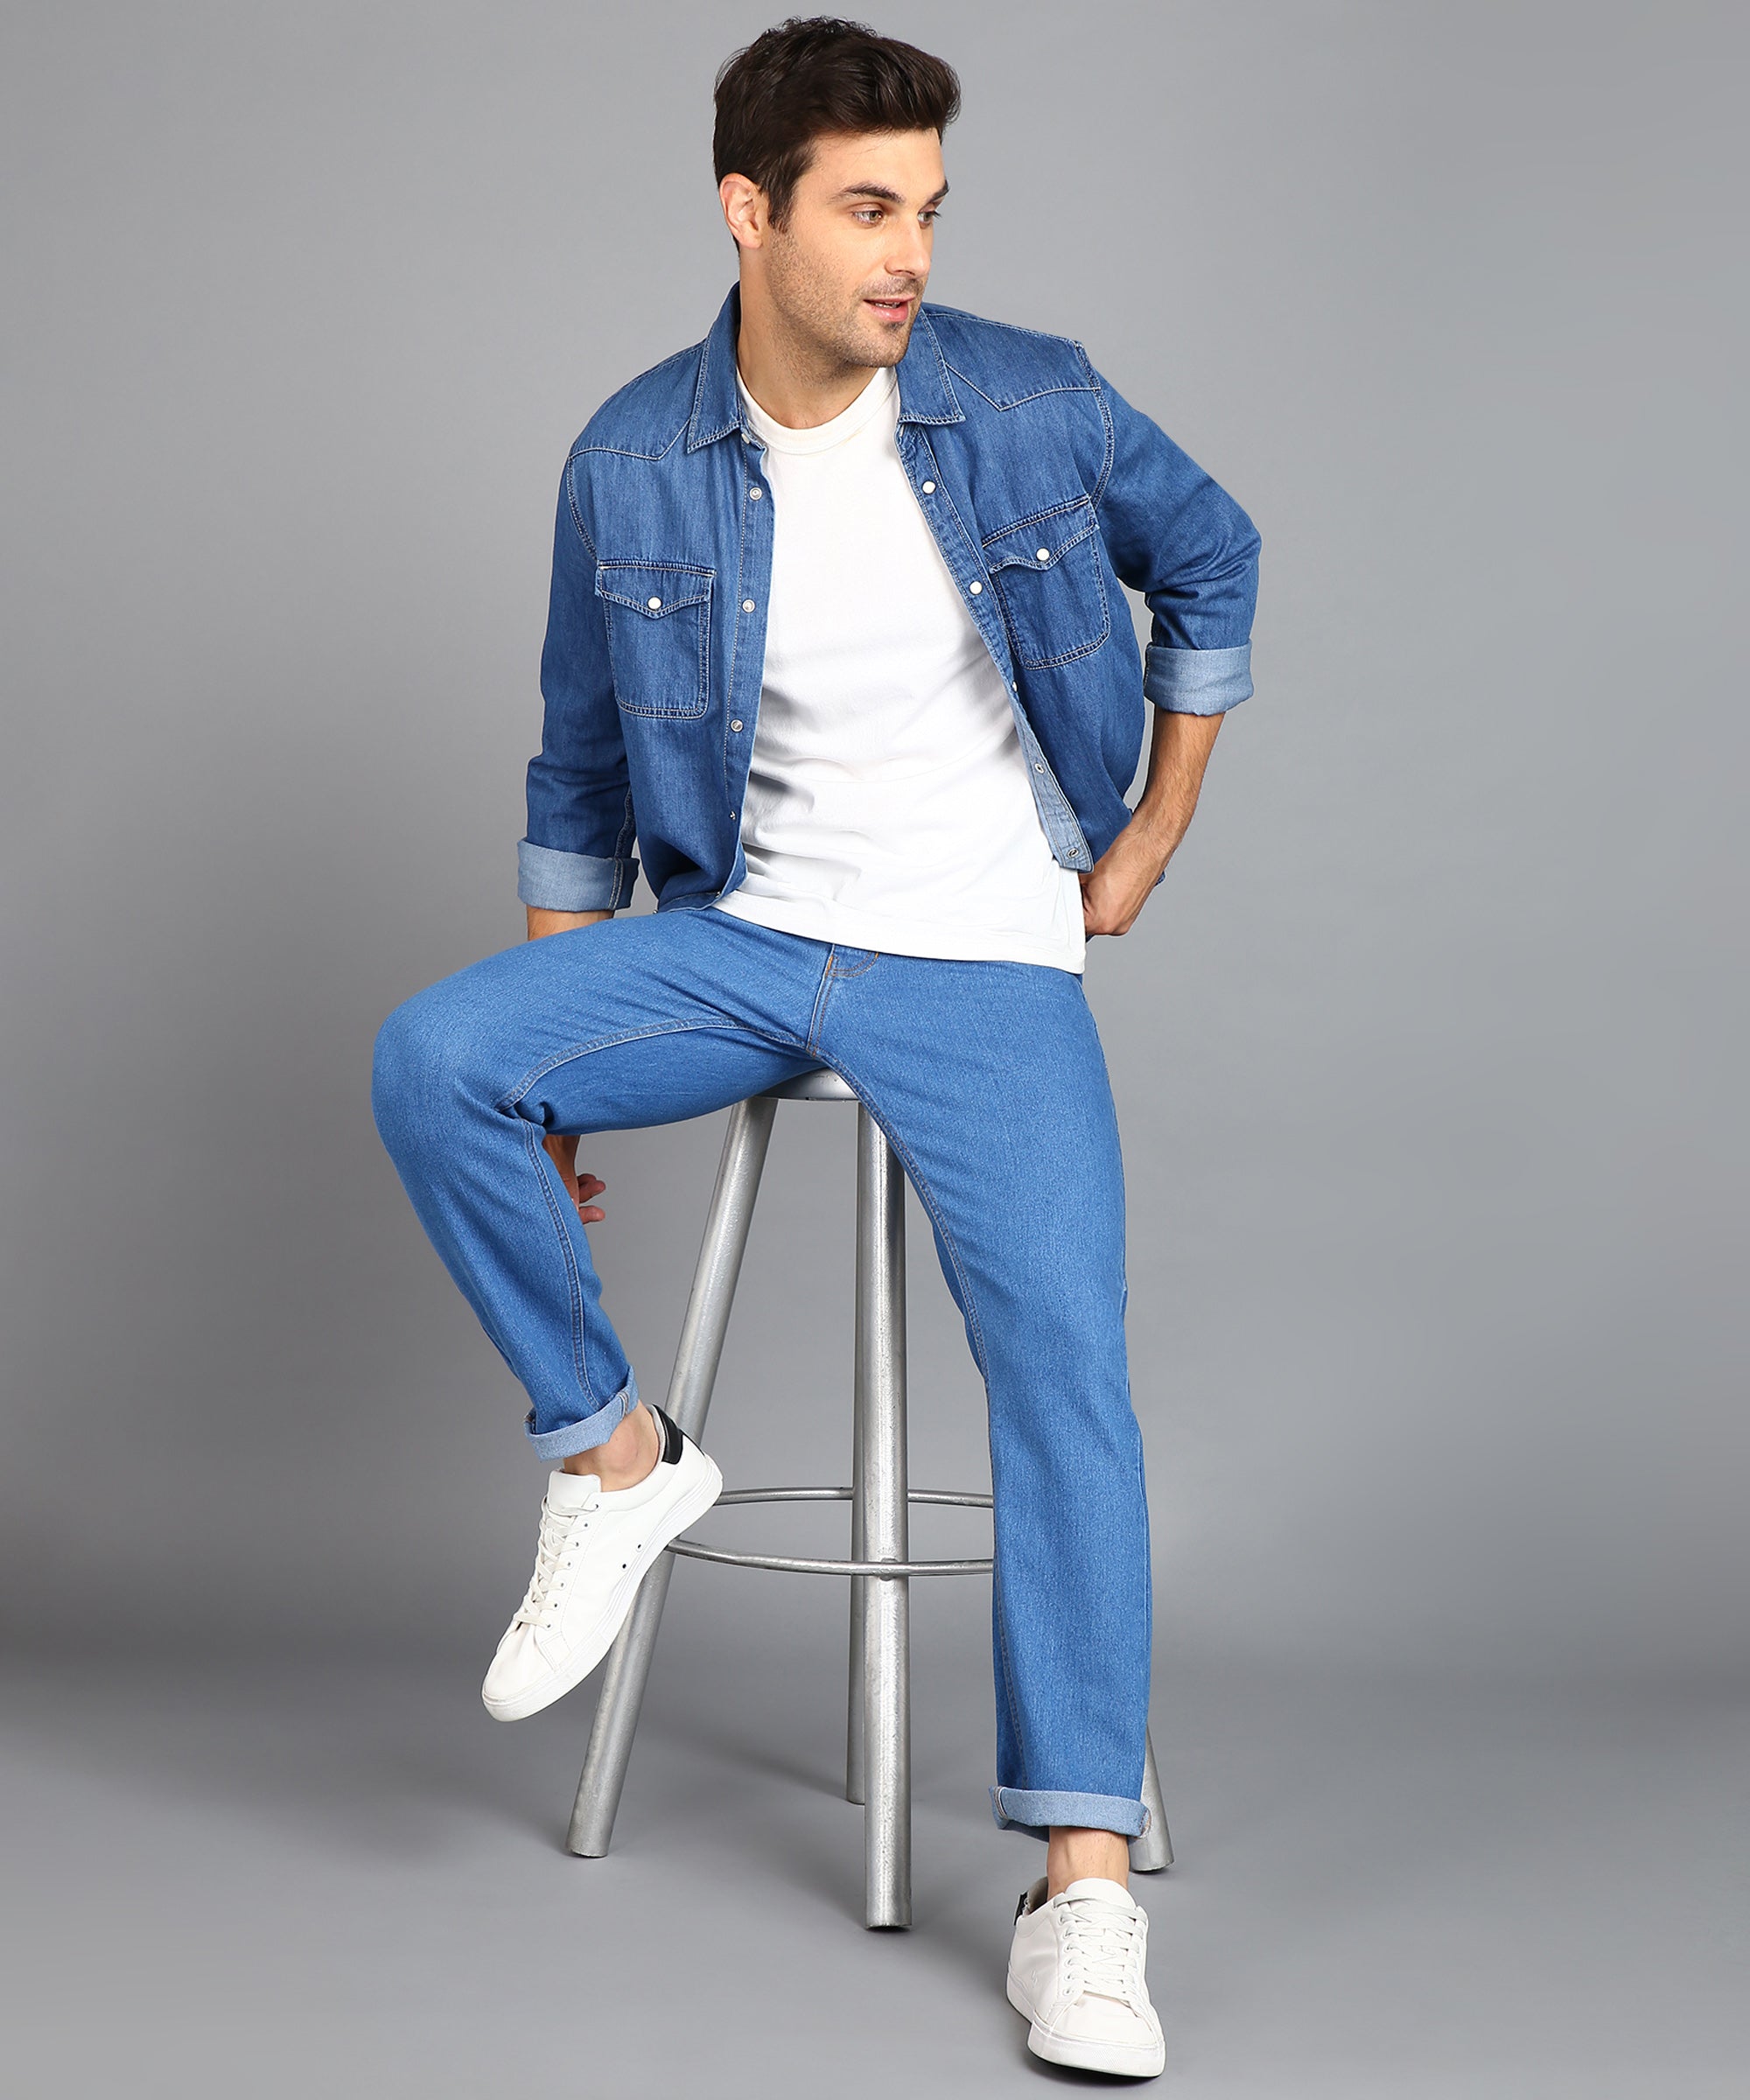 Men's Light Blue Regular Fit Washed Jeans Stretchable